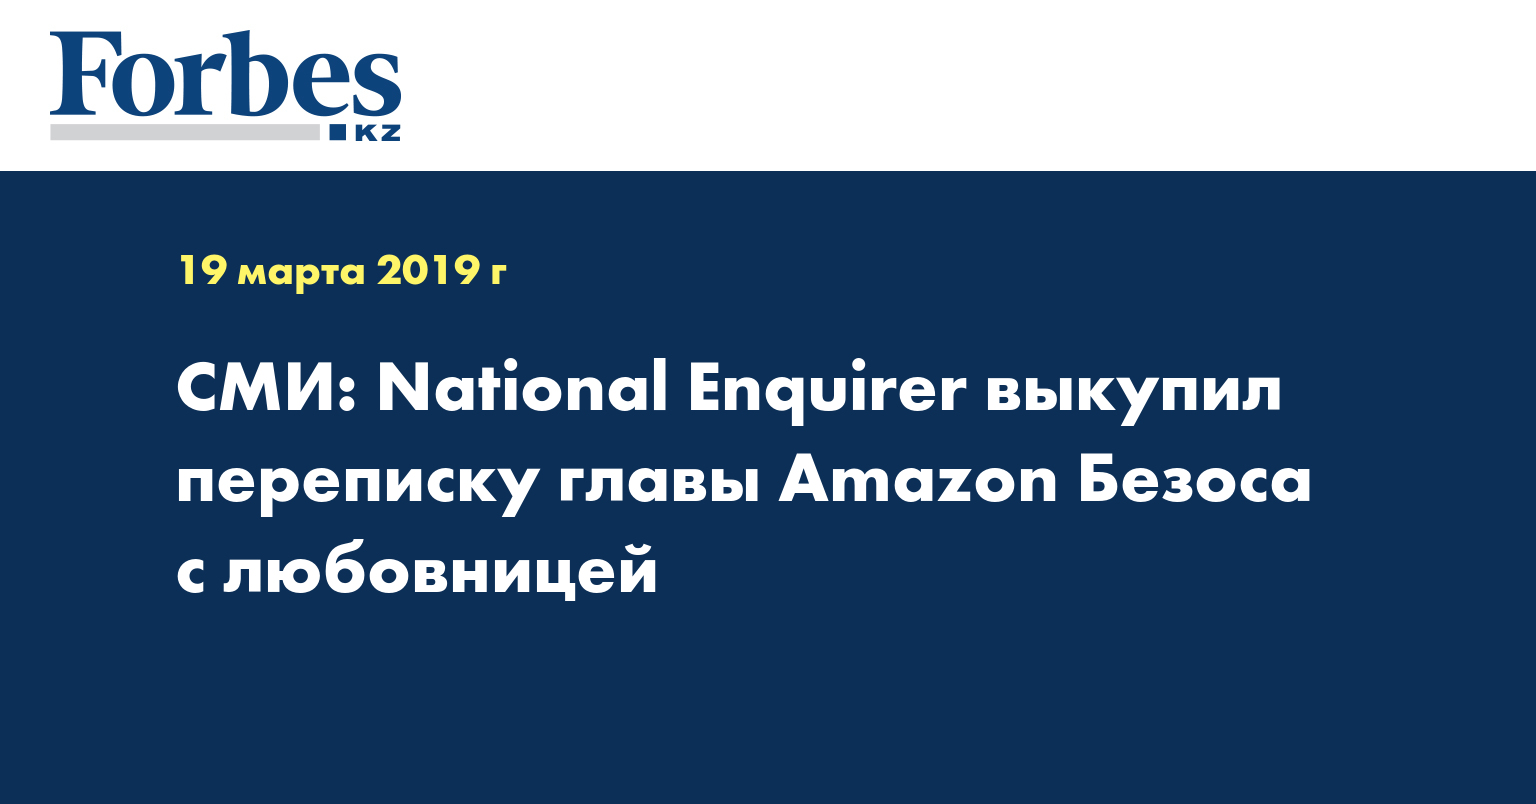 СМИ: National Enquirer выкупил переписку главы Amazon Безоса с любовницей